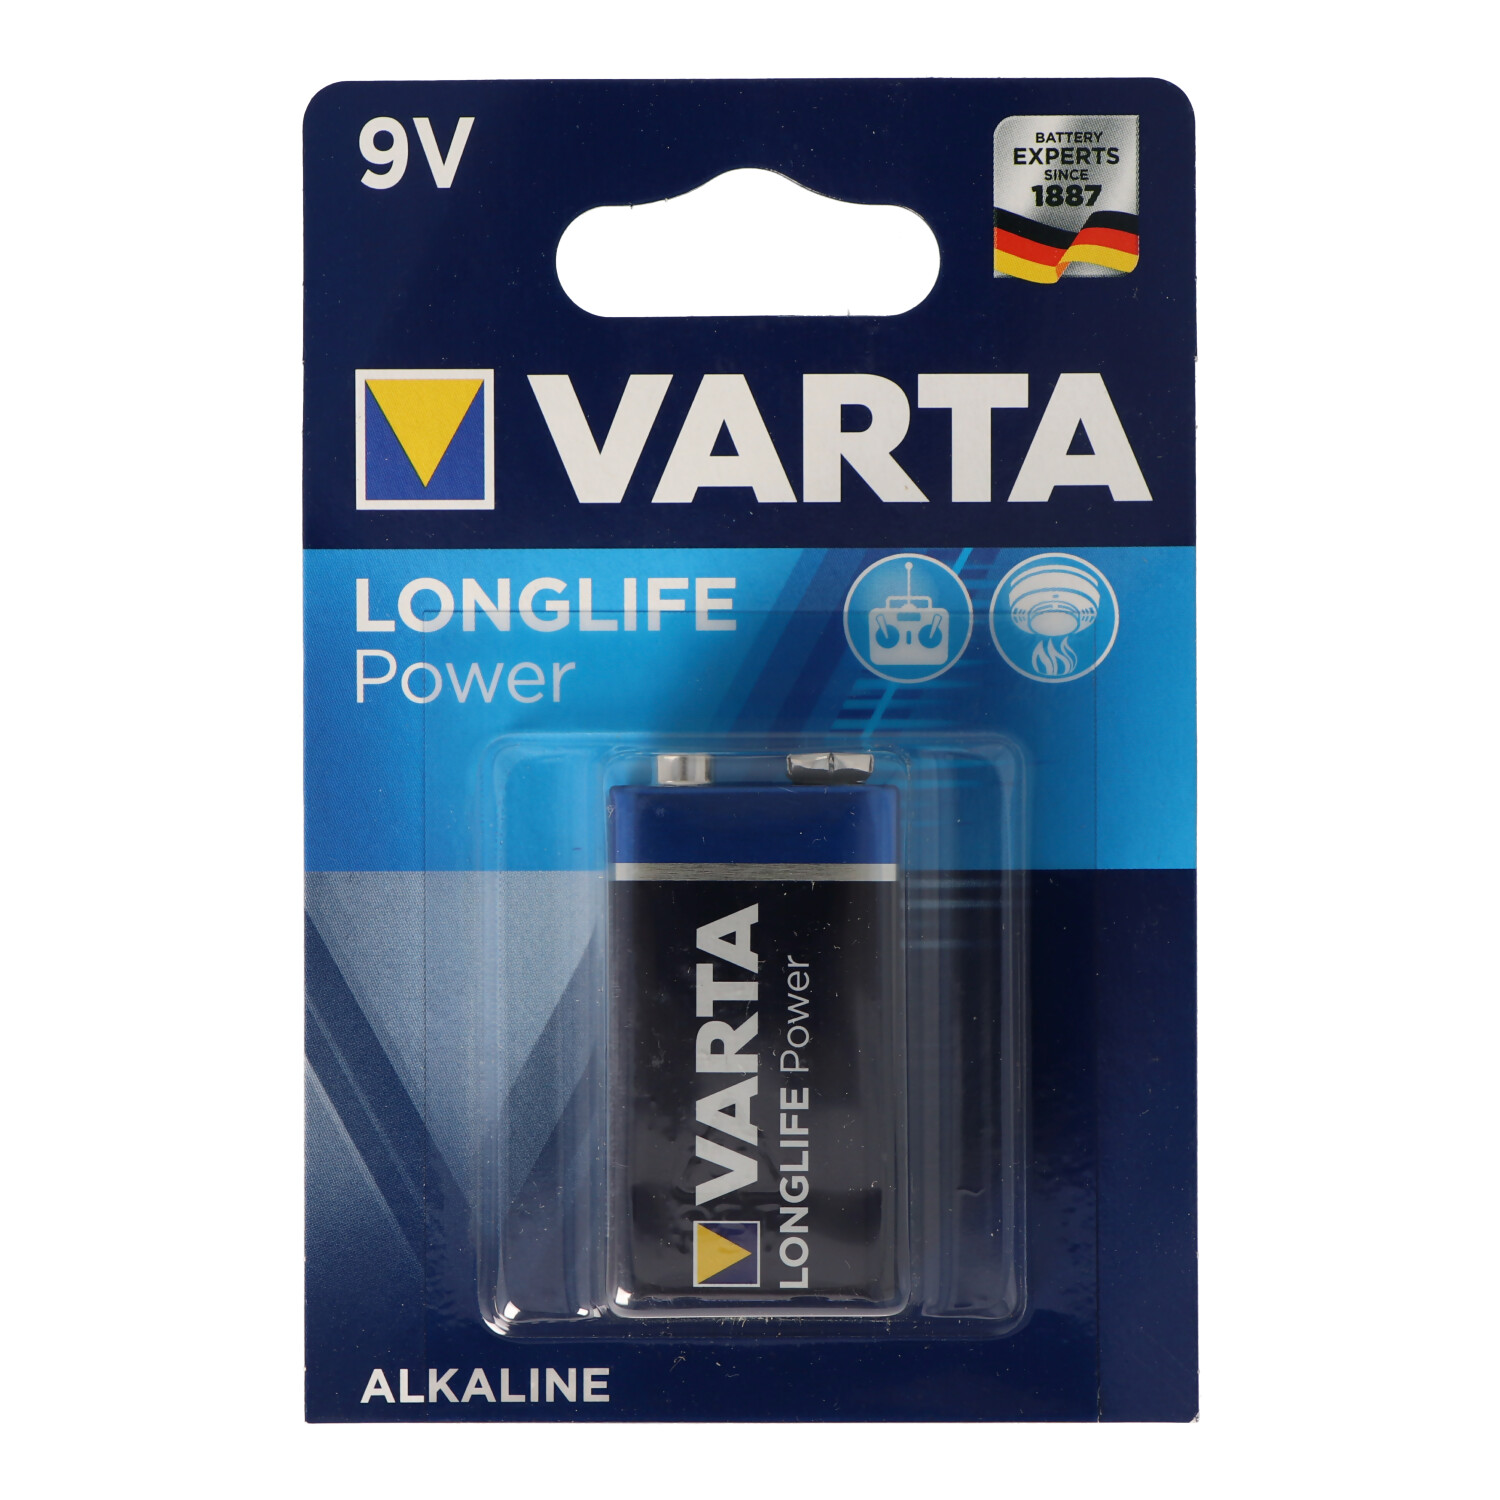 9V Distancia VARTA Volt, 9 6LR61 Longlife Power 4922 Block Batterie Batterie, Blister) Ah AlMn, (1er Mando 0.58